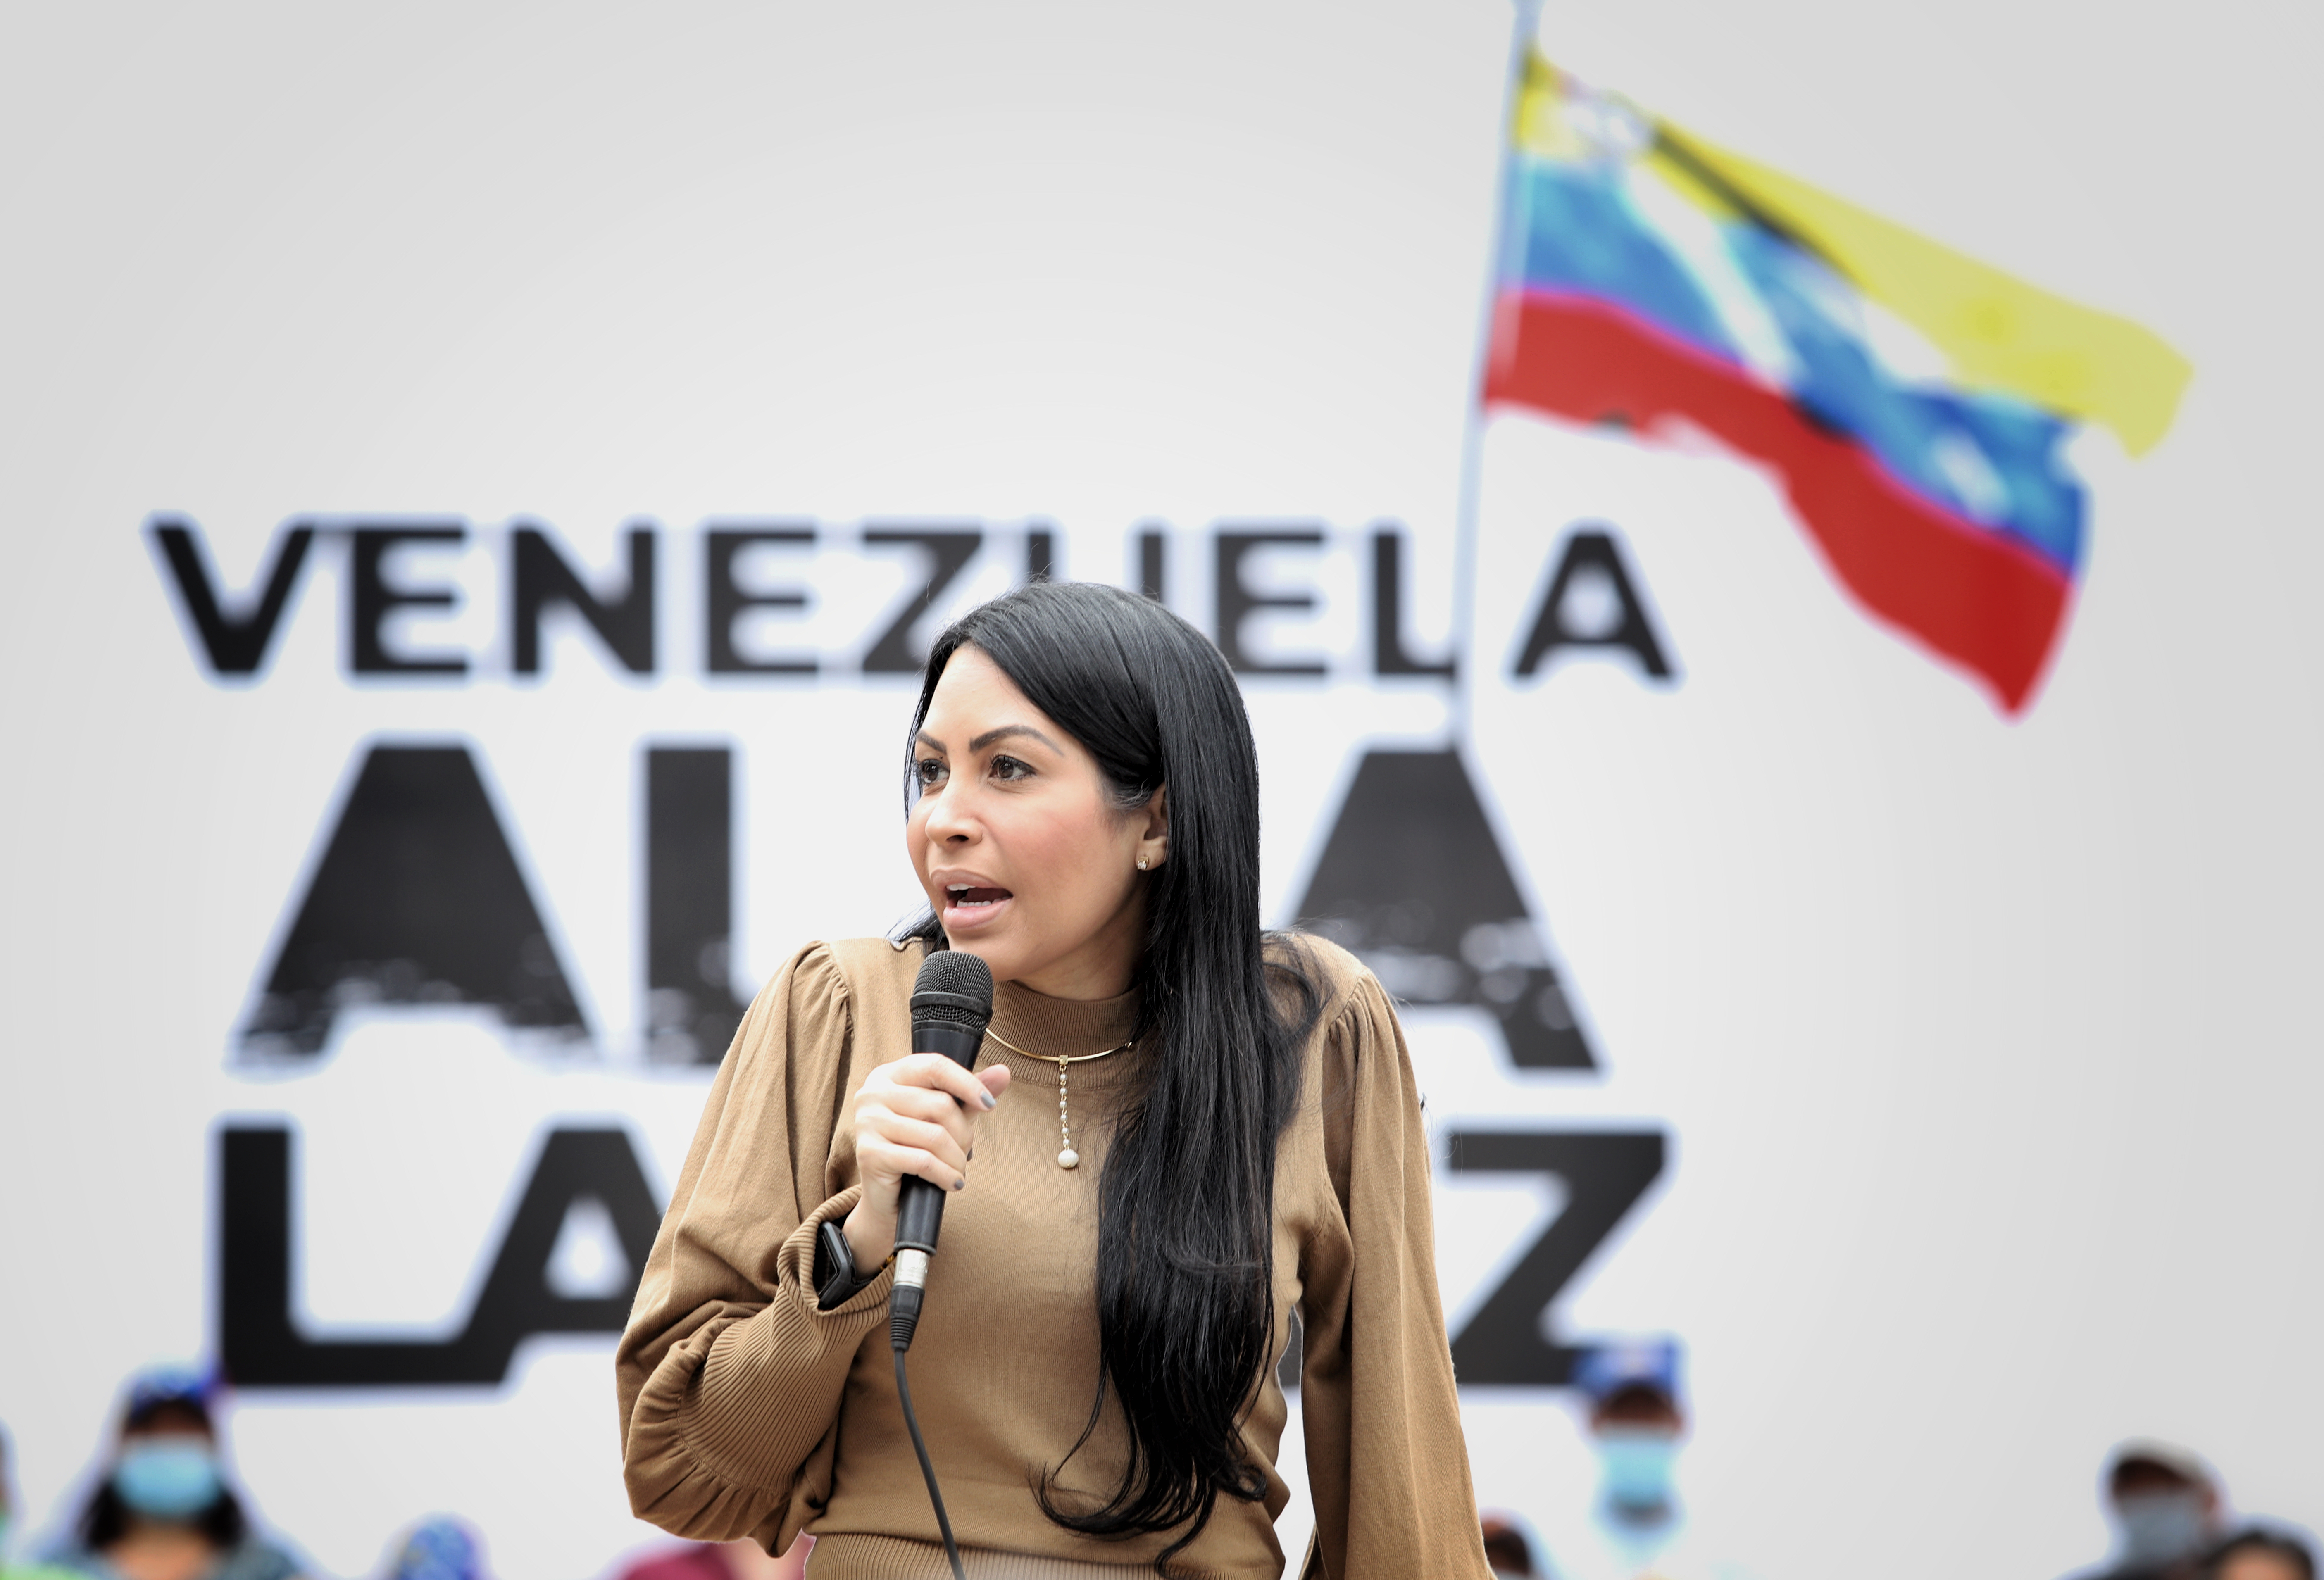 Delsa Solórzano: La respuesta del régimen siempre será violencia junto con fraude, trampa y robo